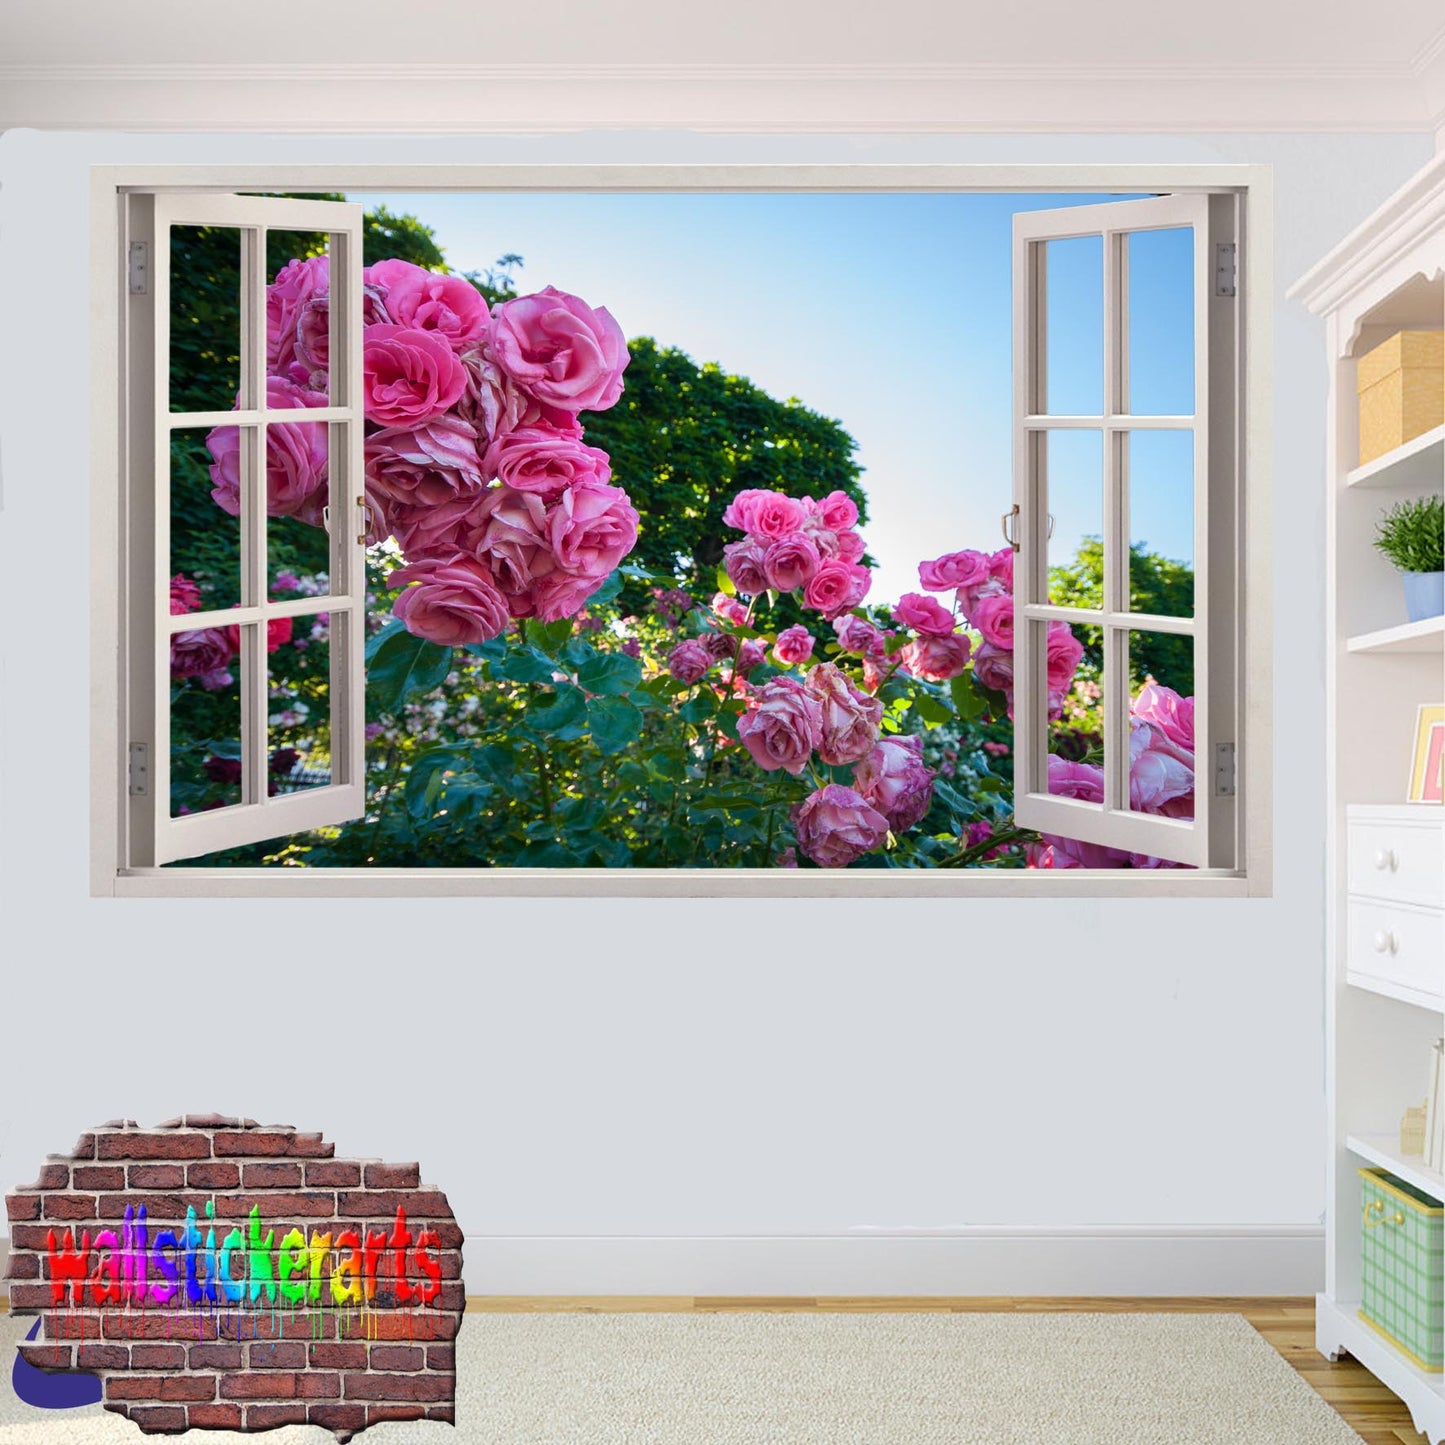 Rose Garden 3d Art Wall Sticker Mural Room Office Shop Home Decor Decal YS2